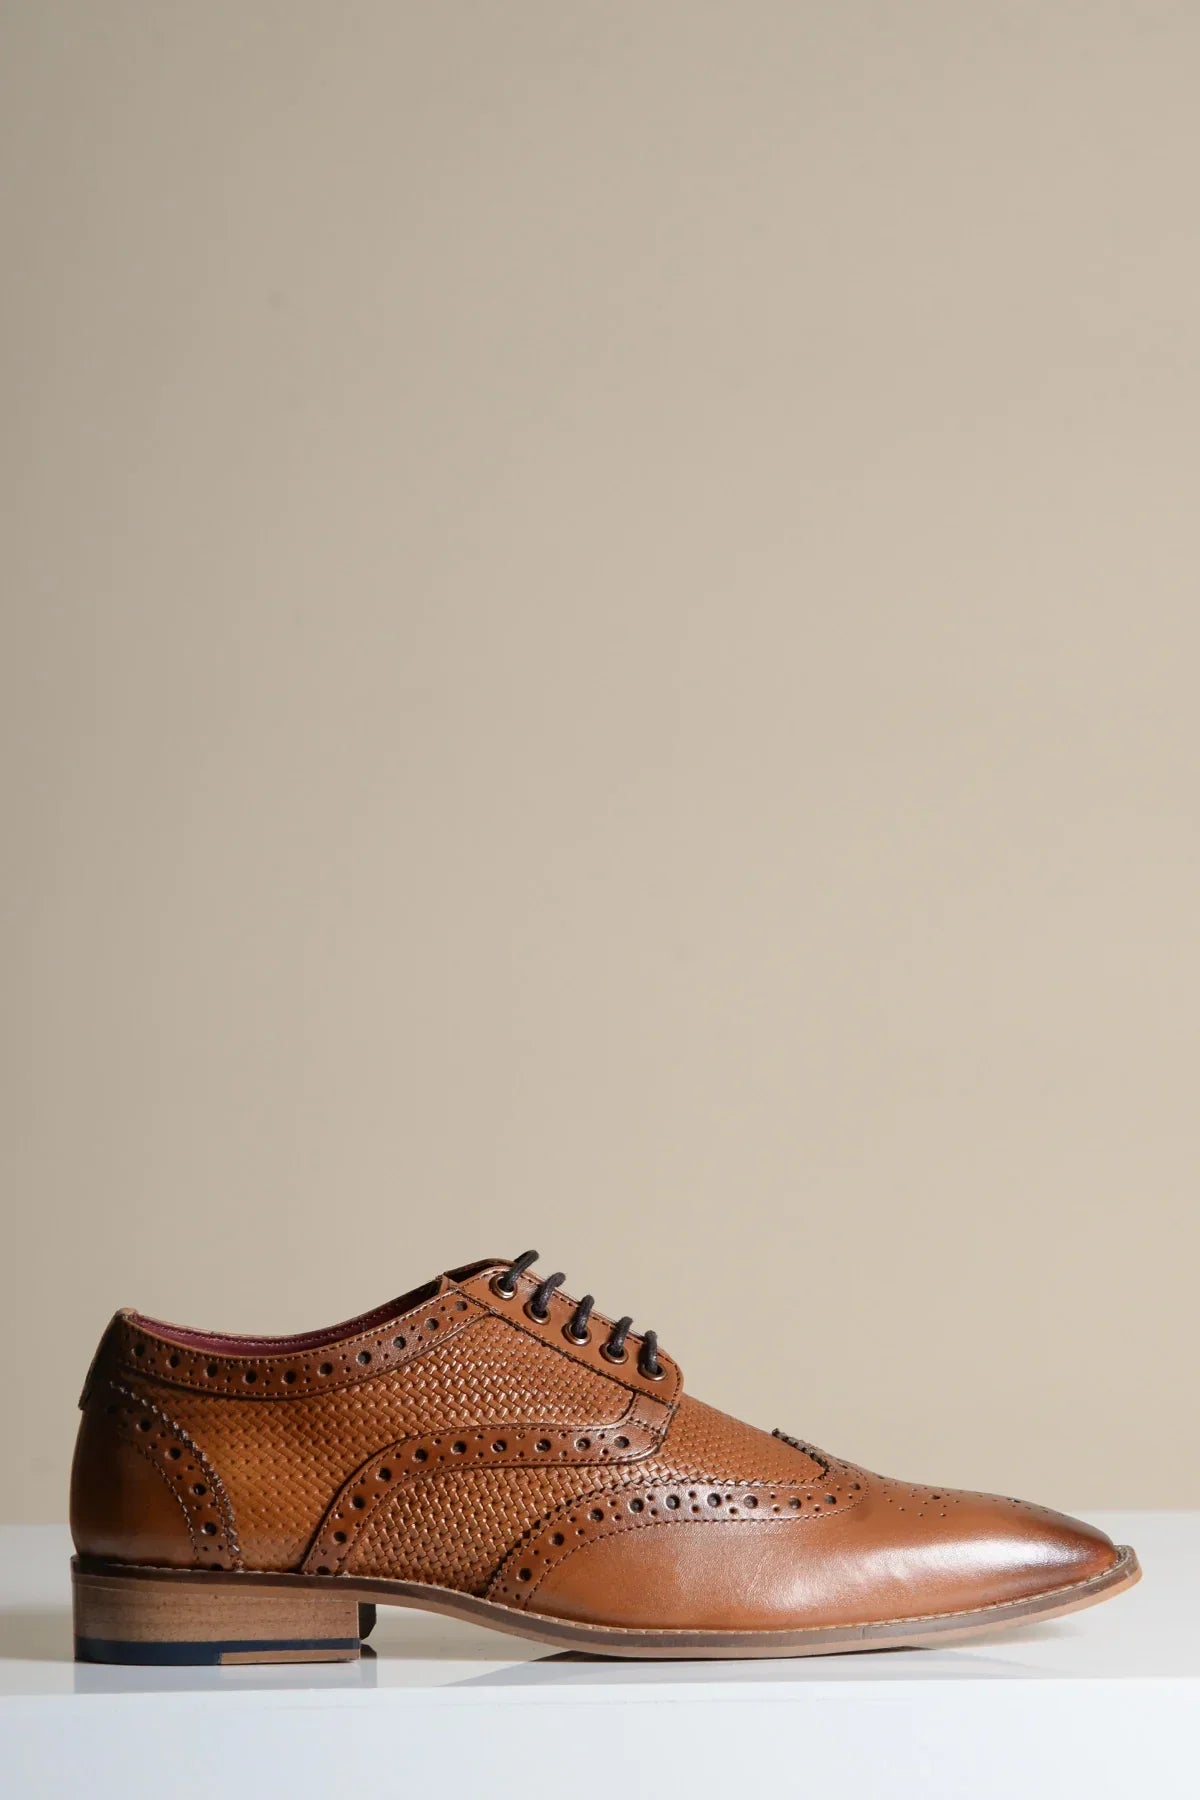 Hnedé kožené topánky, Marc Darcy Brandon - Wingtip brogue